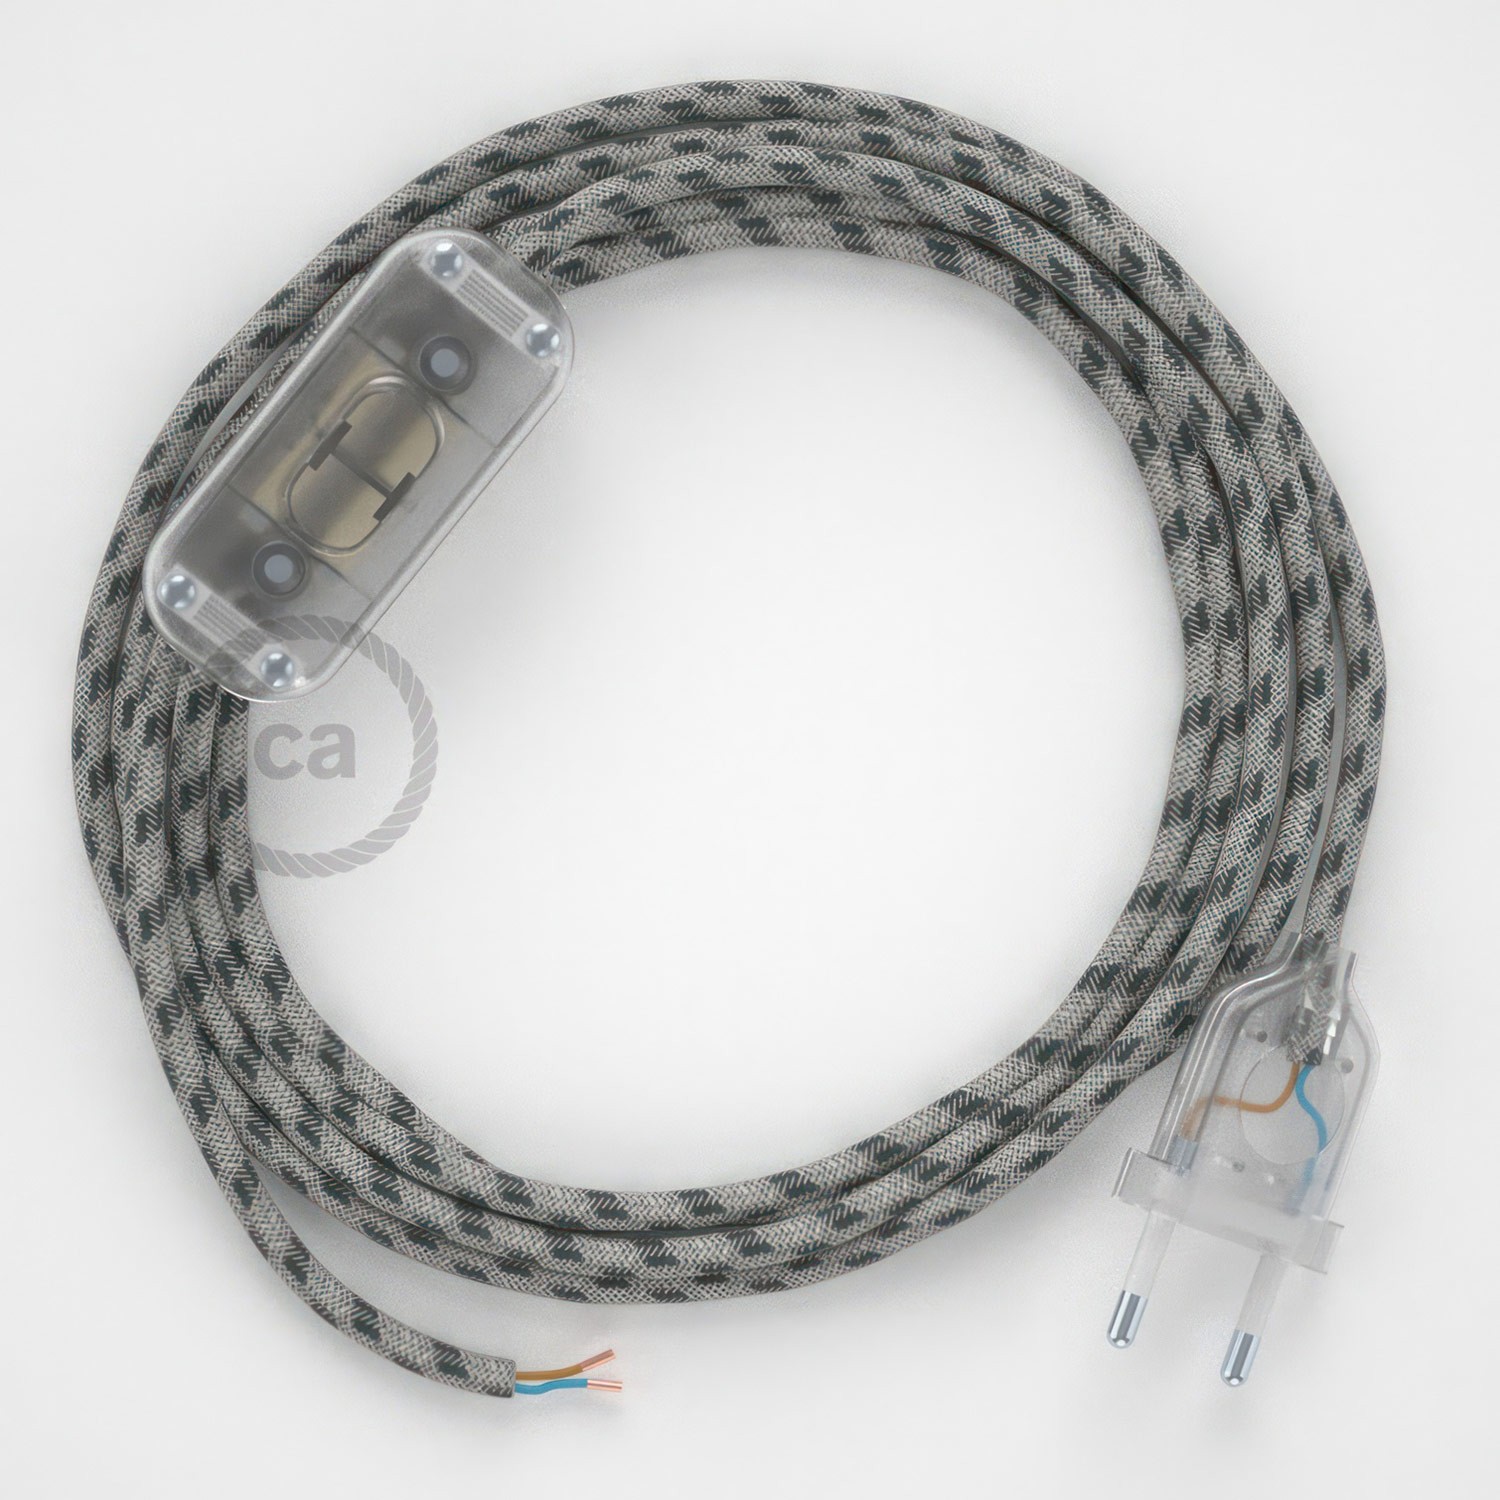 Cableado para lámpara, cable RD54 Algodón y Lino Stripes Antracita 1,8m. Elige tu el color de la clavija y del interruptor!